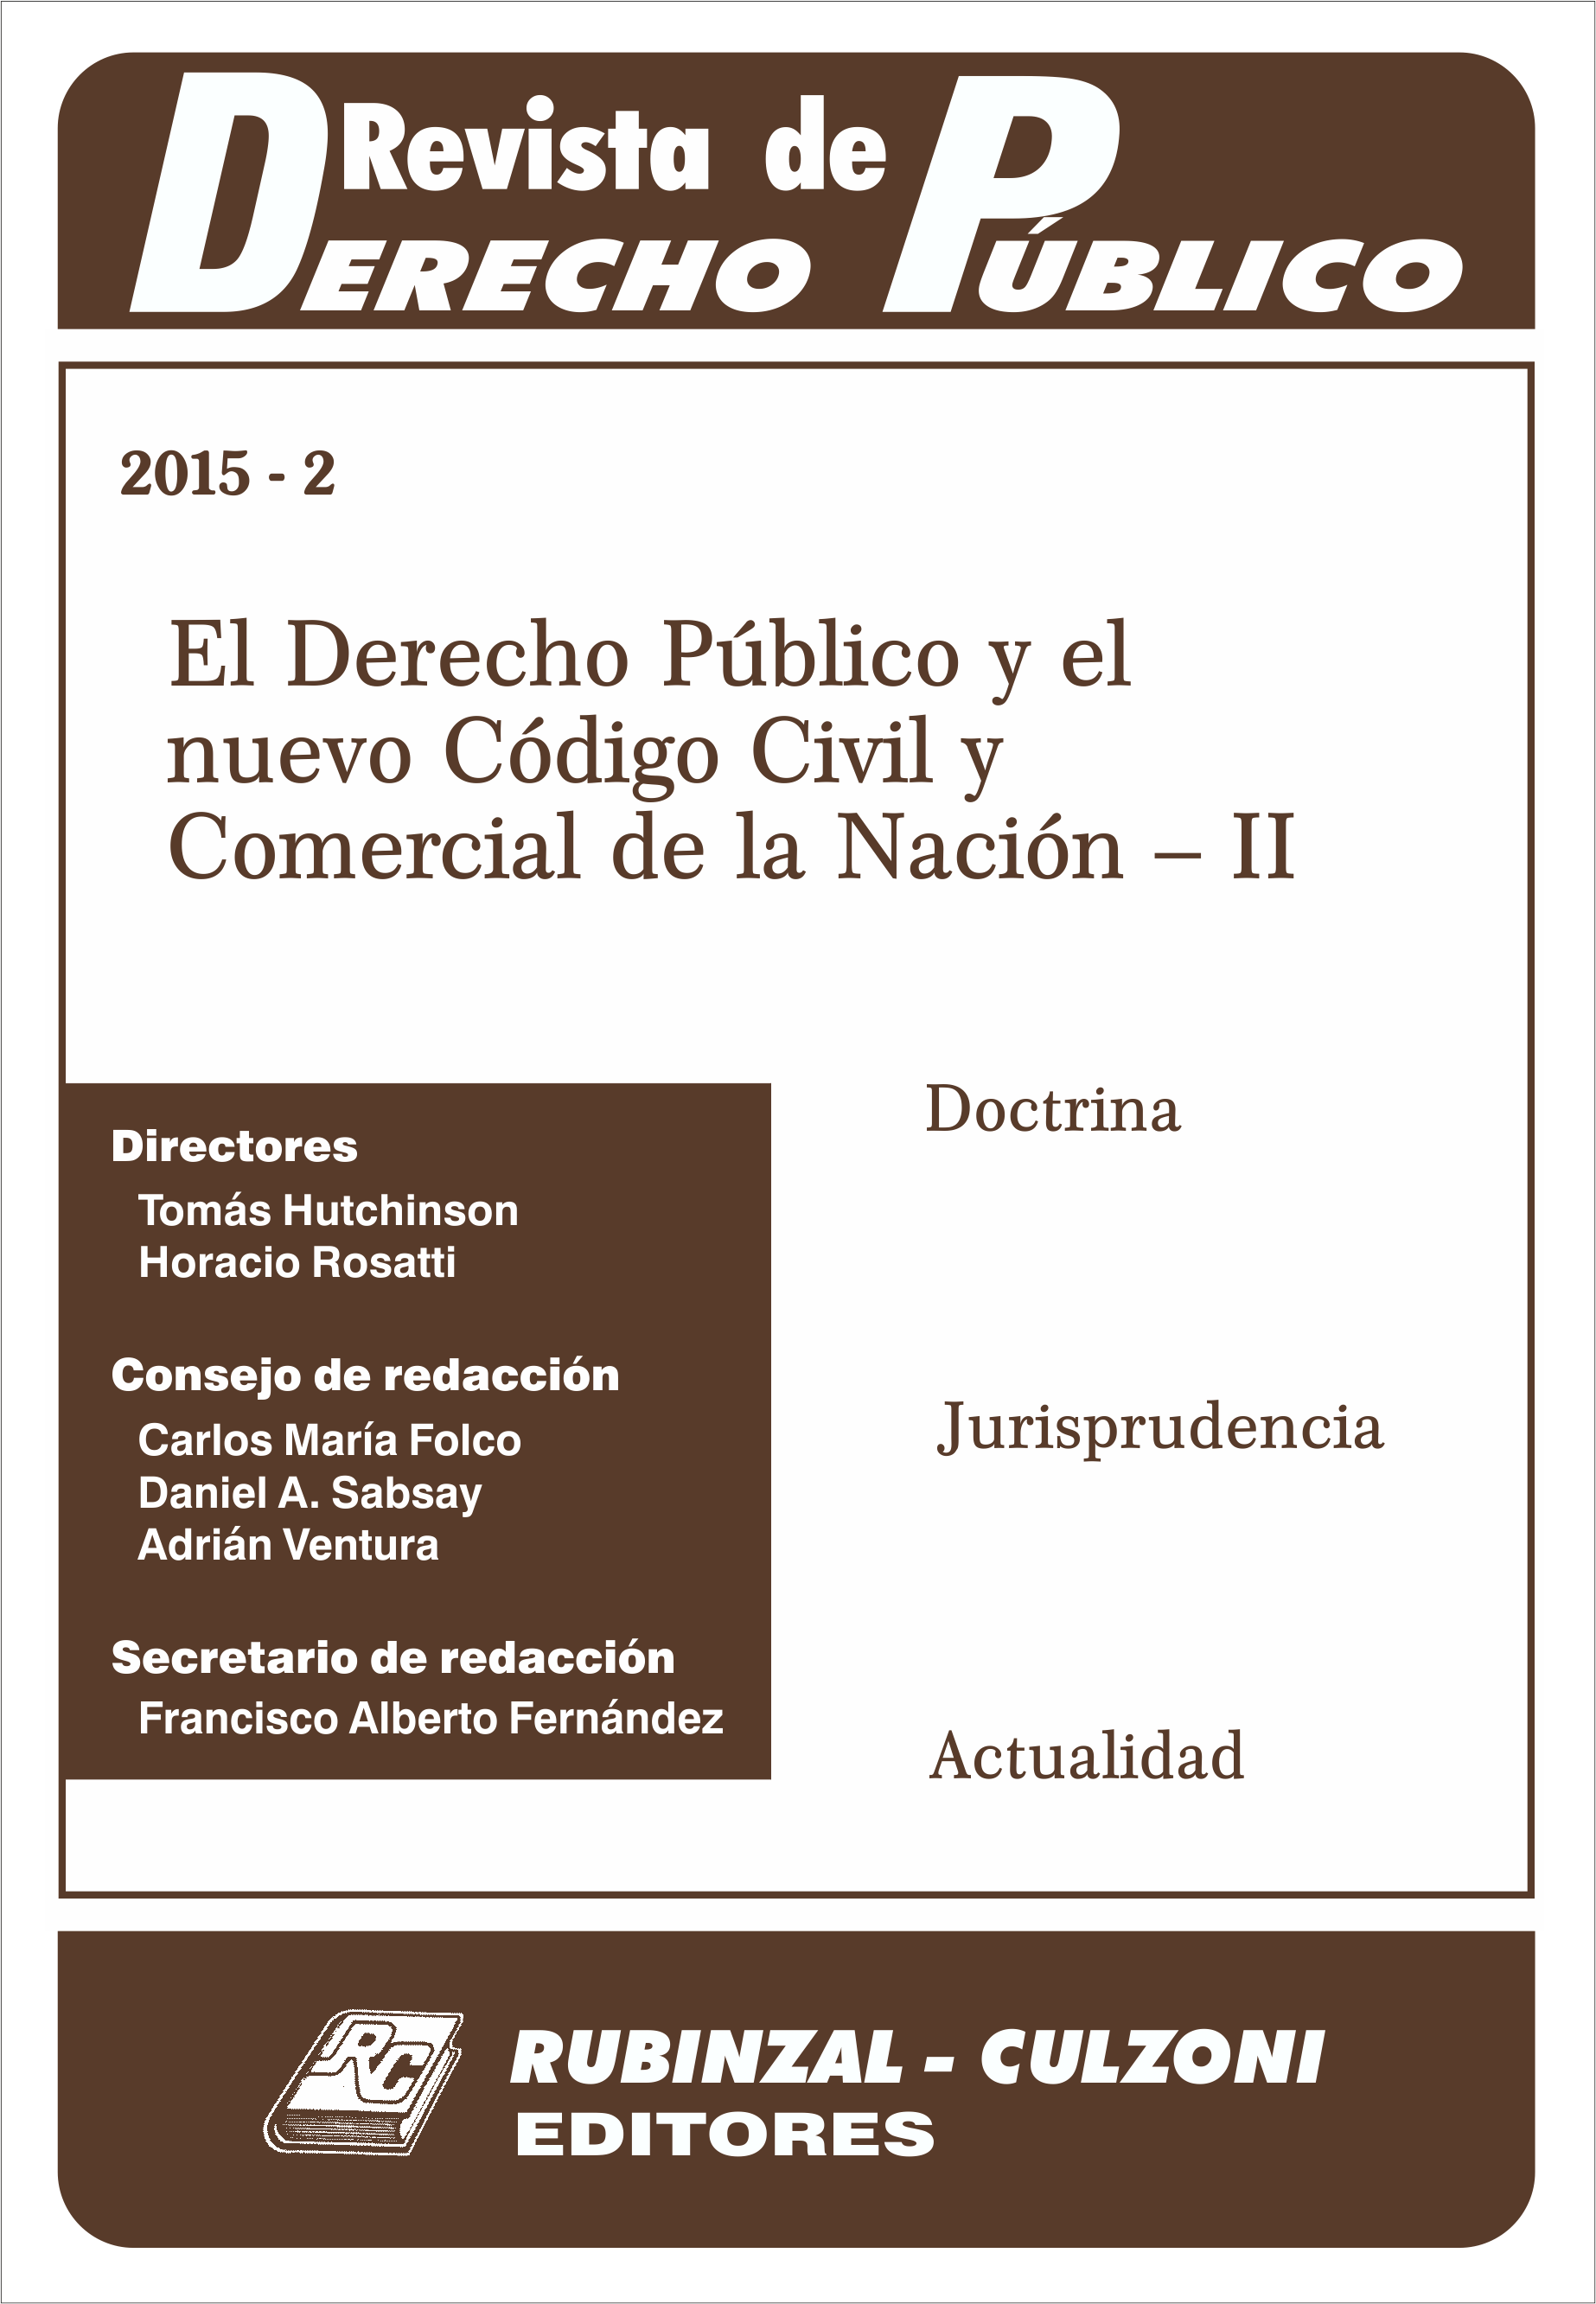 Revista de Derecho Público - El Derecho Público y el nuevo Código Civil y Comercial de la Nación - II